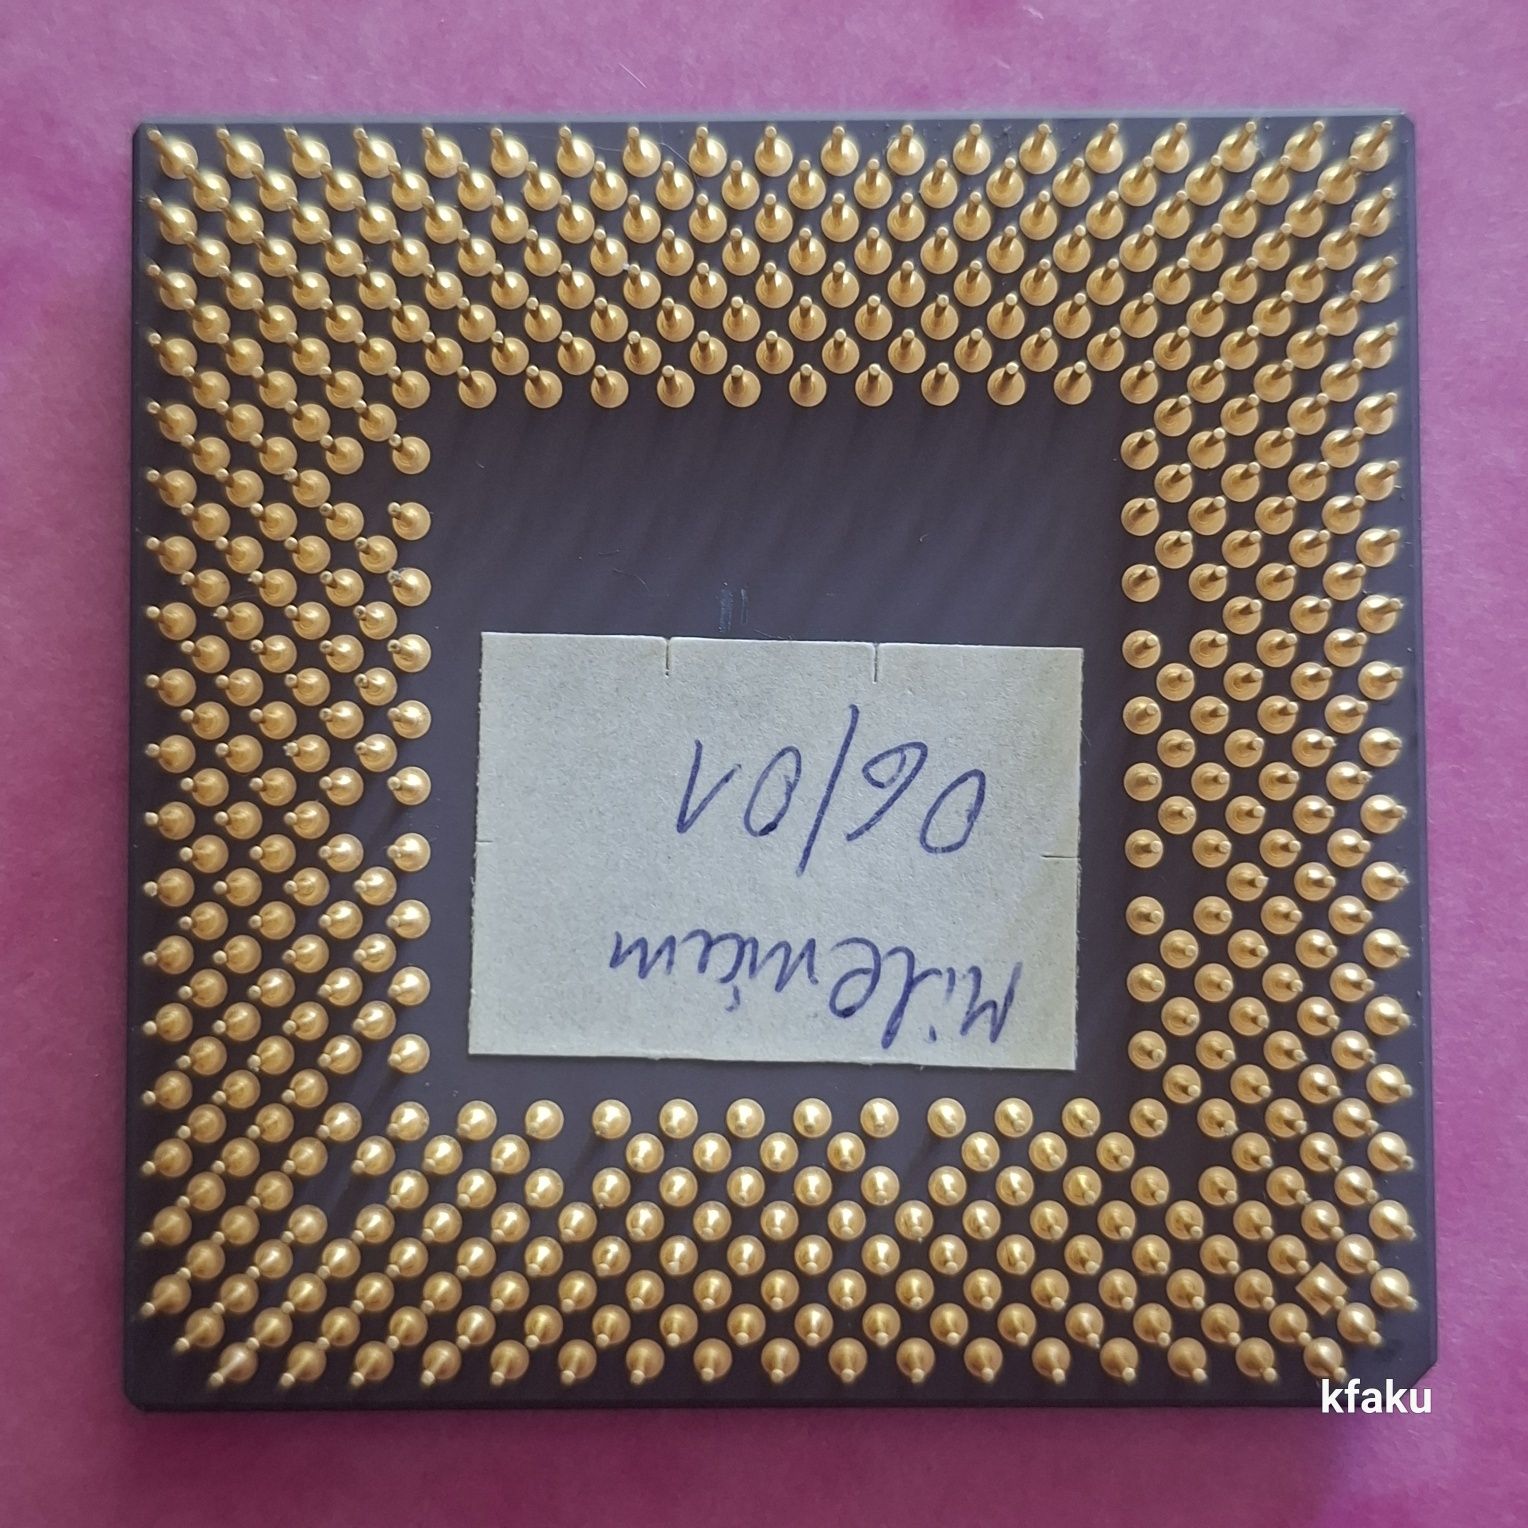 Procesor AMD Duron D800AUT1B socket 462